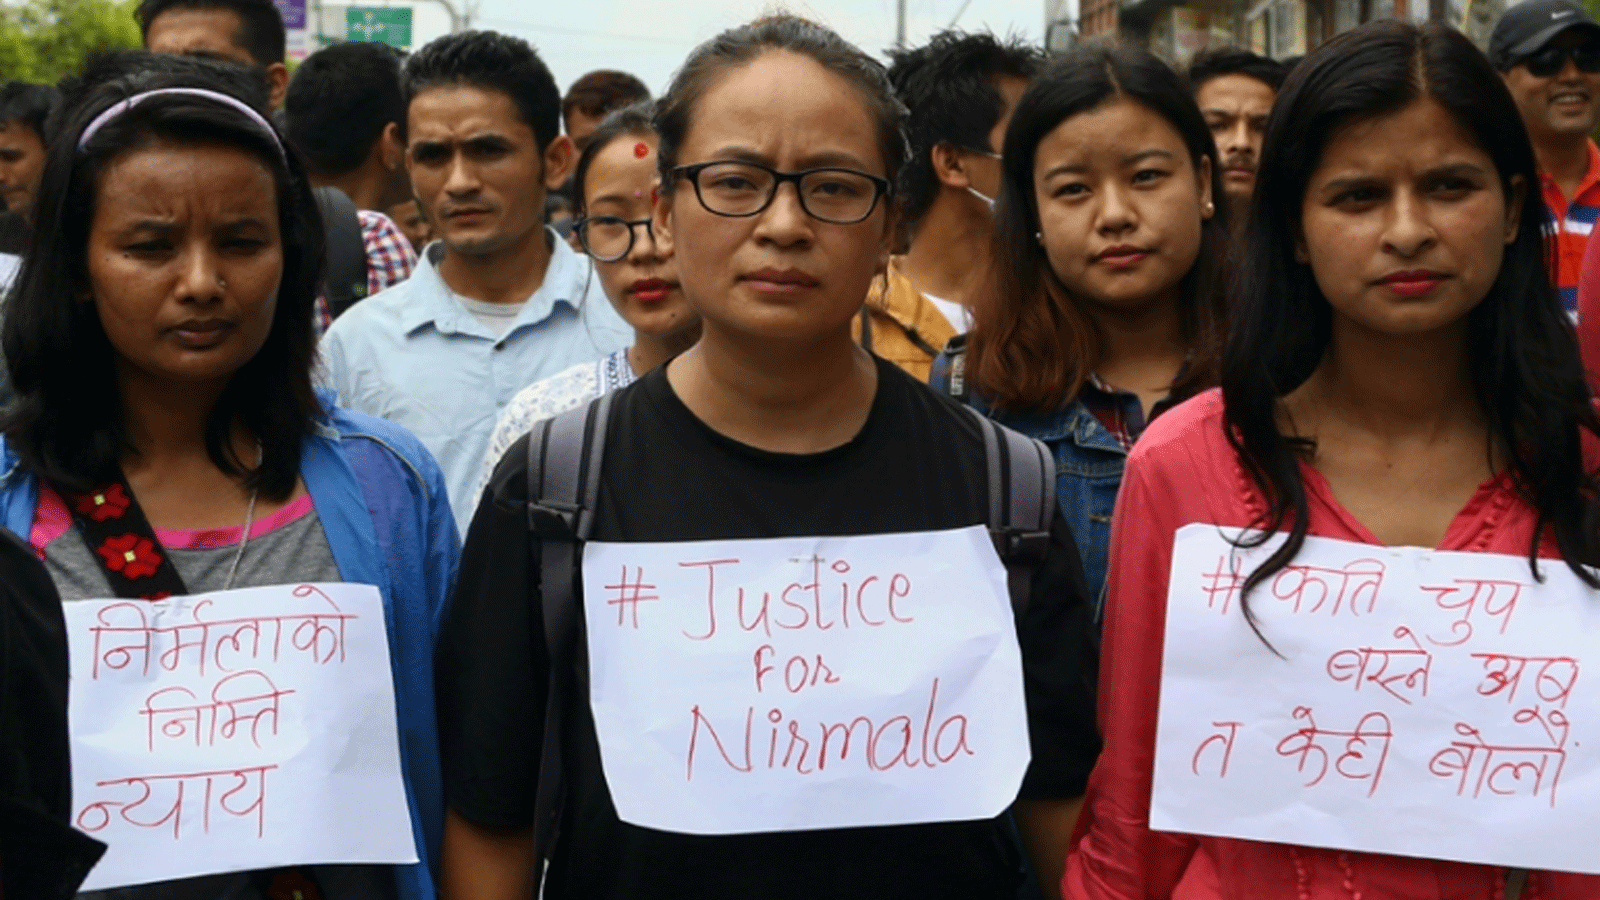 ناشطون نيباليون في كاتماندو يشاركون في احتجاج على مستوى البلاد للمطالبة بالعدالة لضحايا الاغتصاب